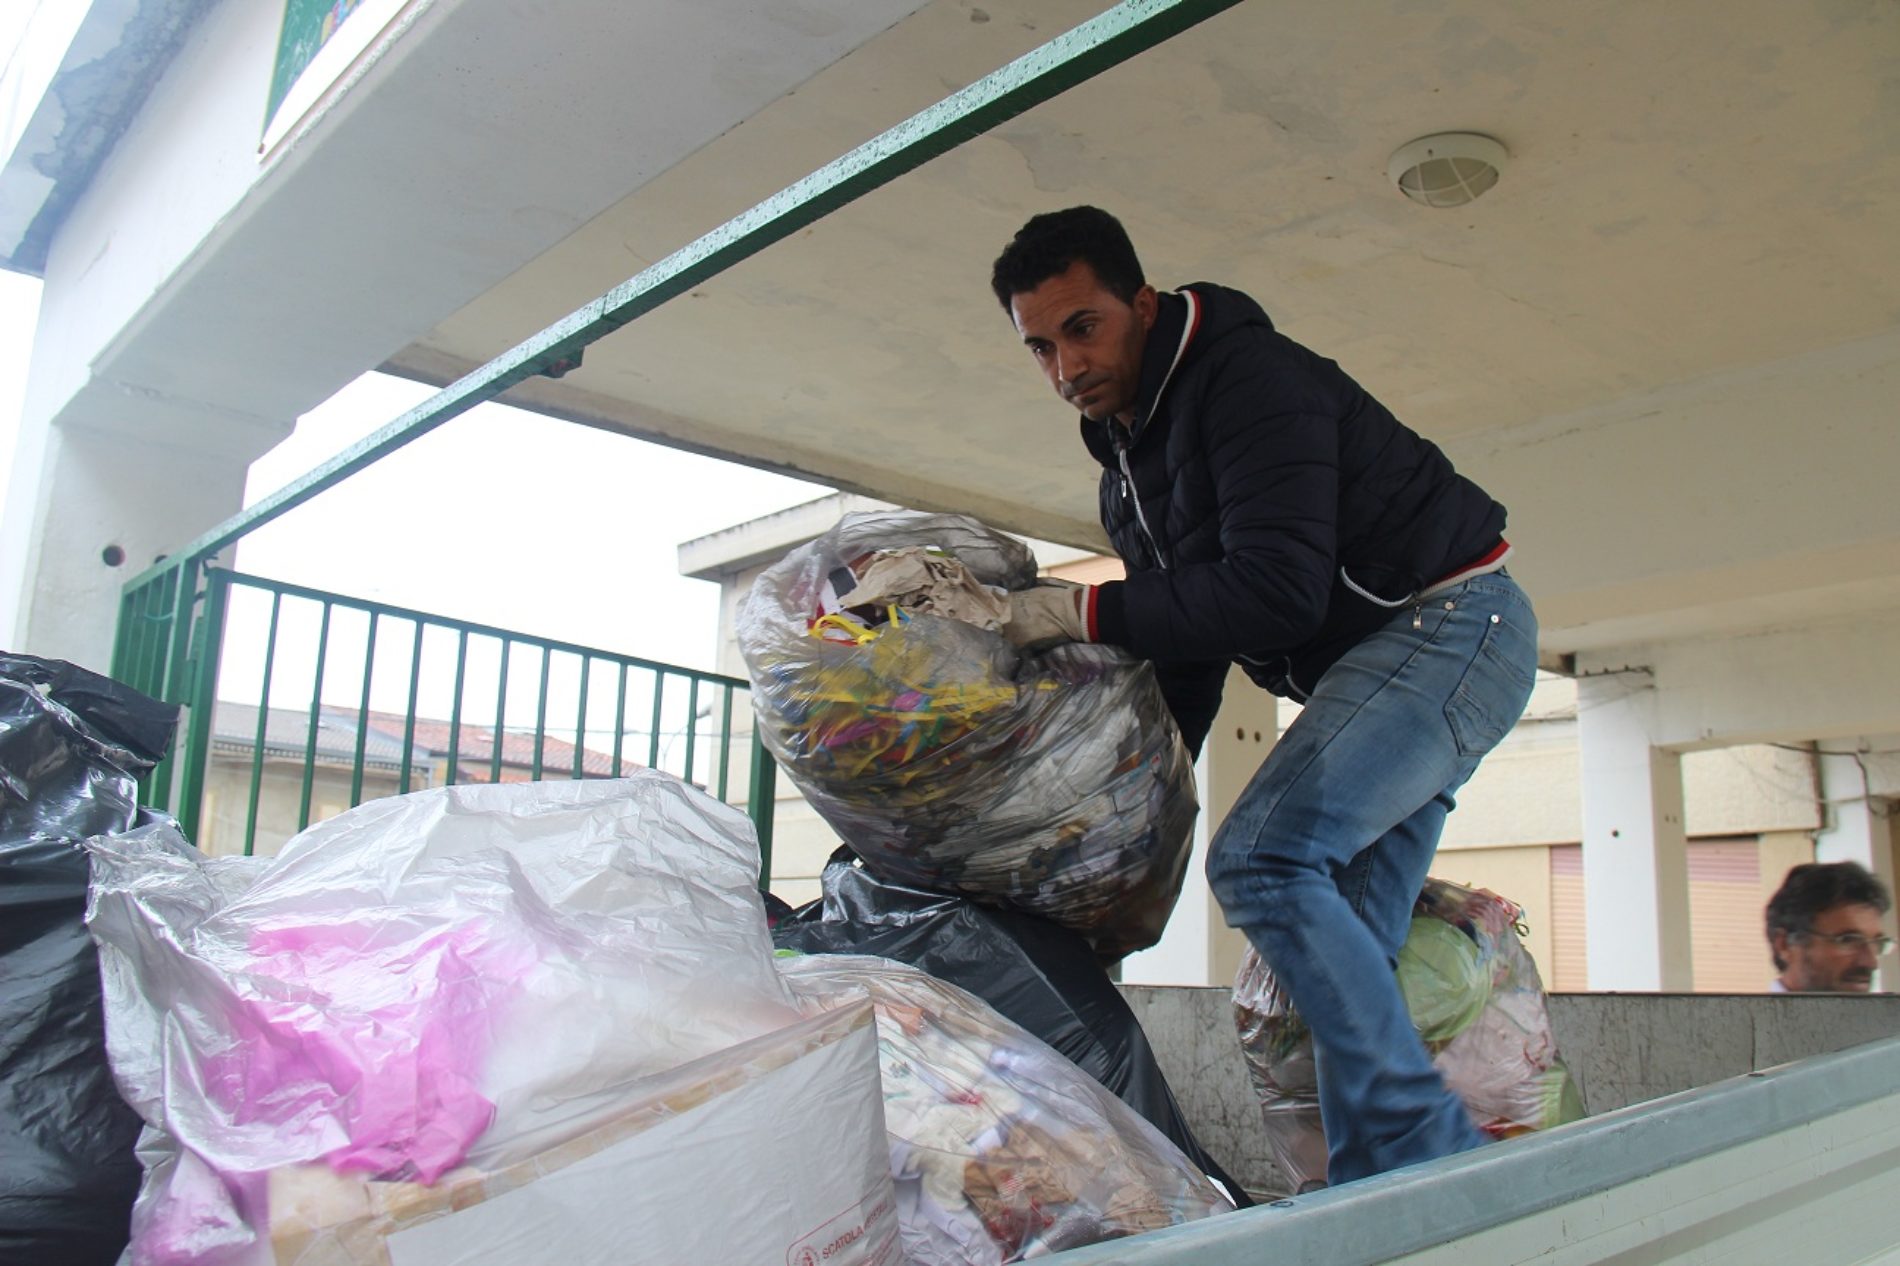 Domani riaprono le scuole ma i rifiuti nei vari siti adibiti a discarica rimangono